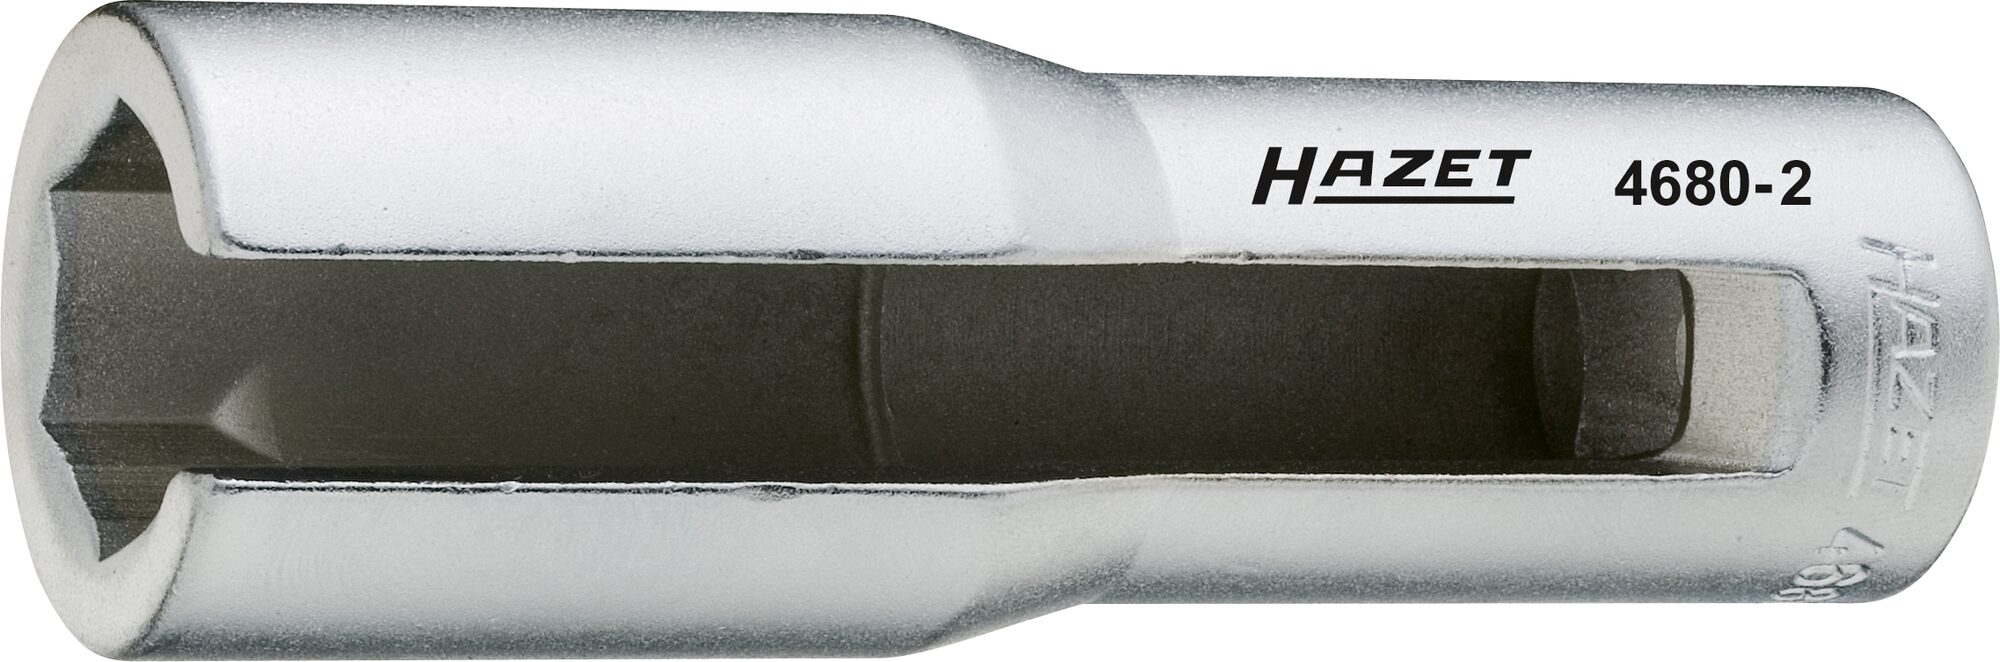 HAZET Lambda-Sonden Einsatz 4680-2 · Vierkant hohl 12,5 mm (1/2 Zoll) · Außen Sechskant Profil · 22 mm